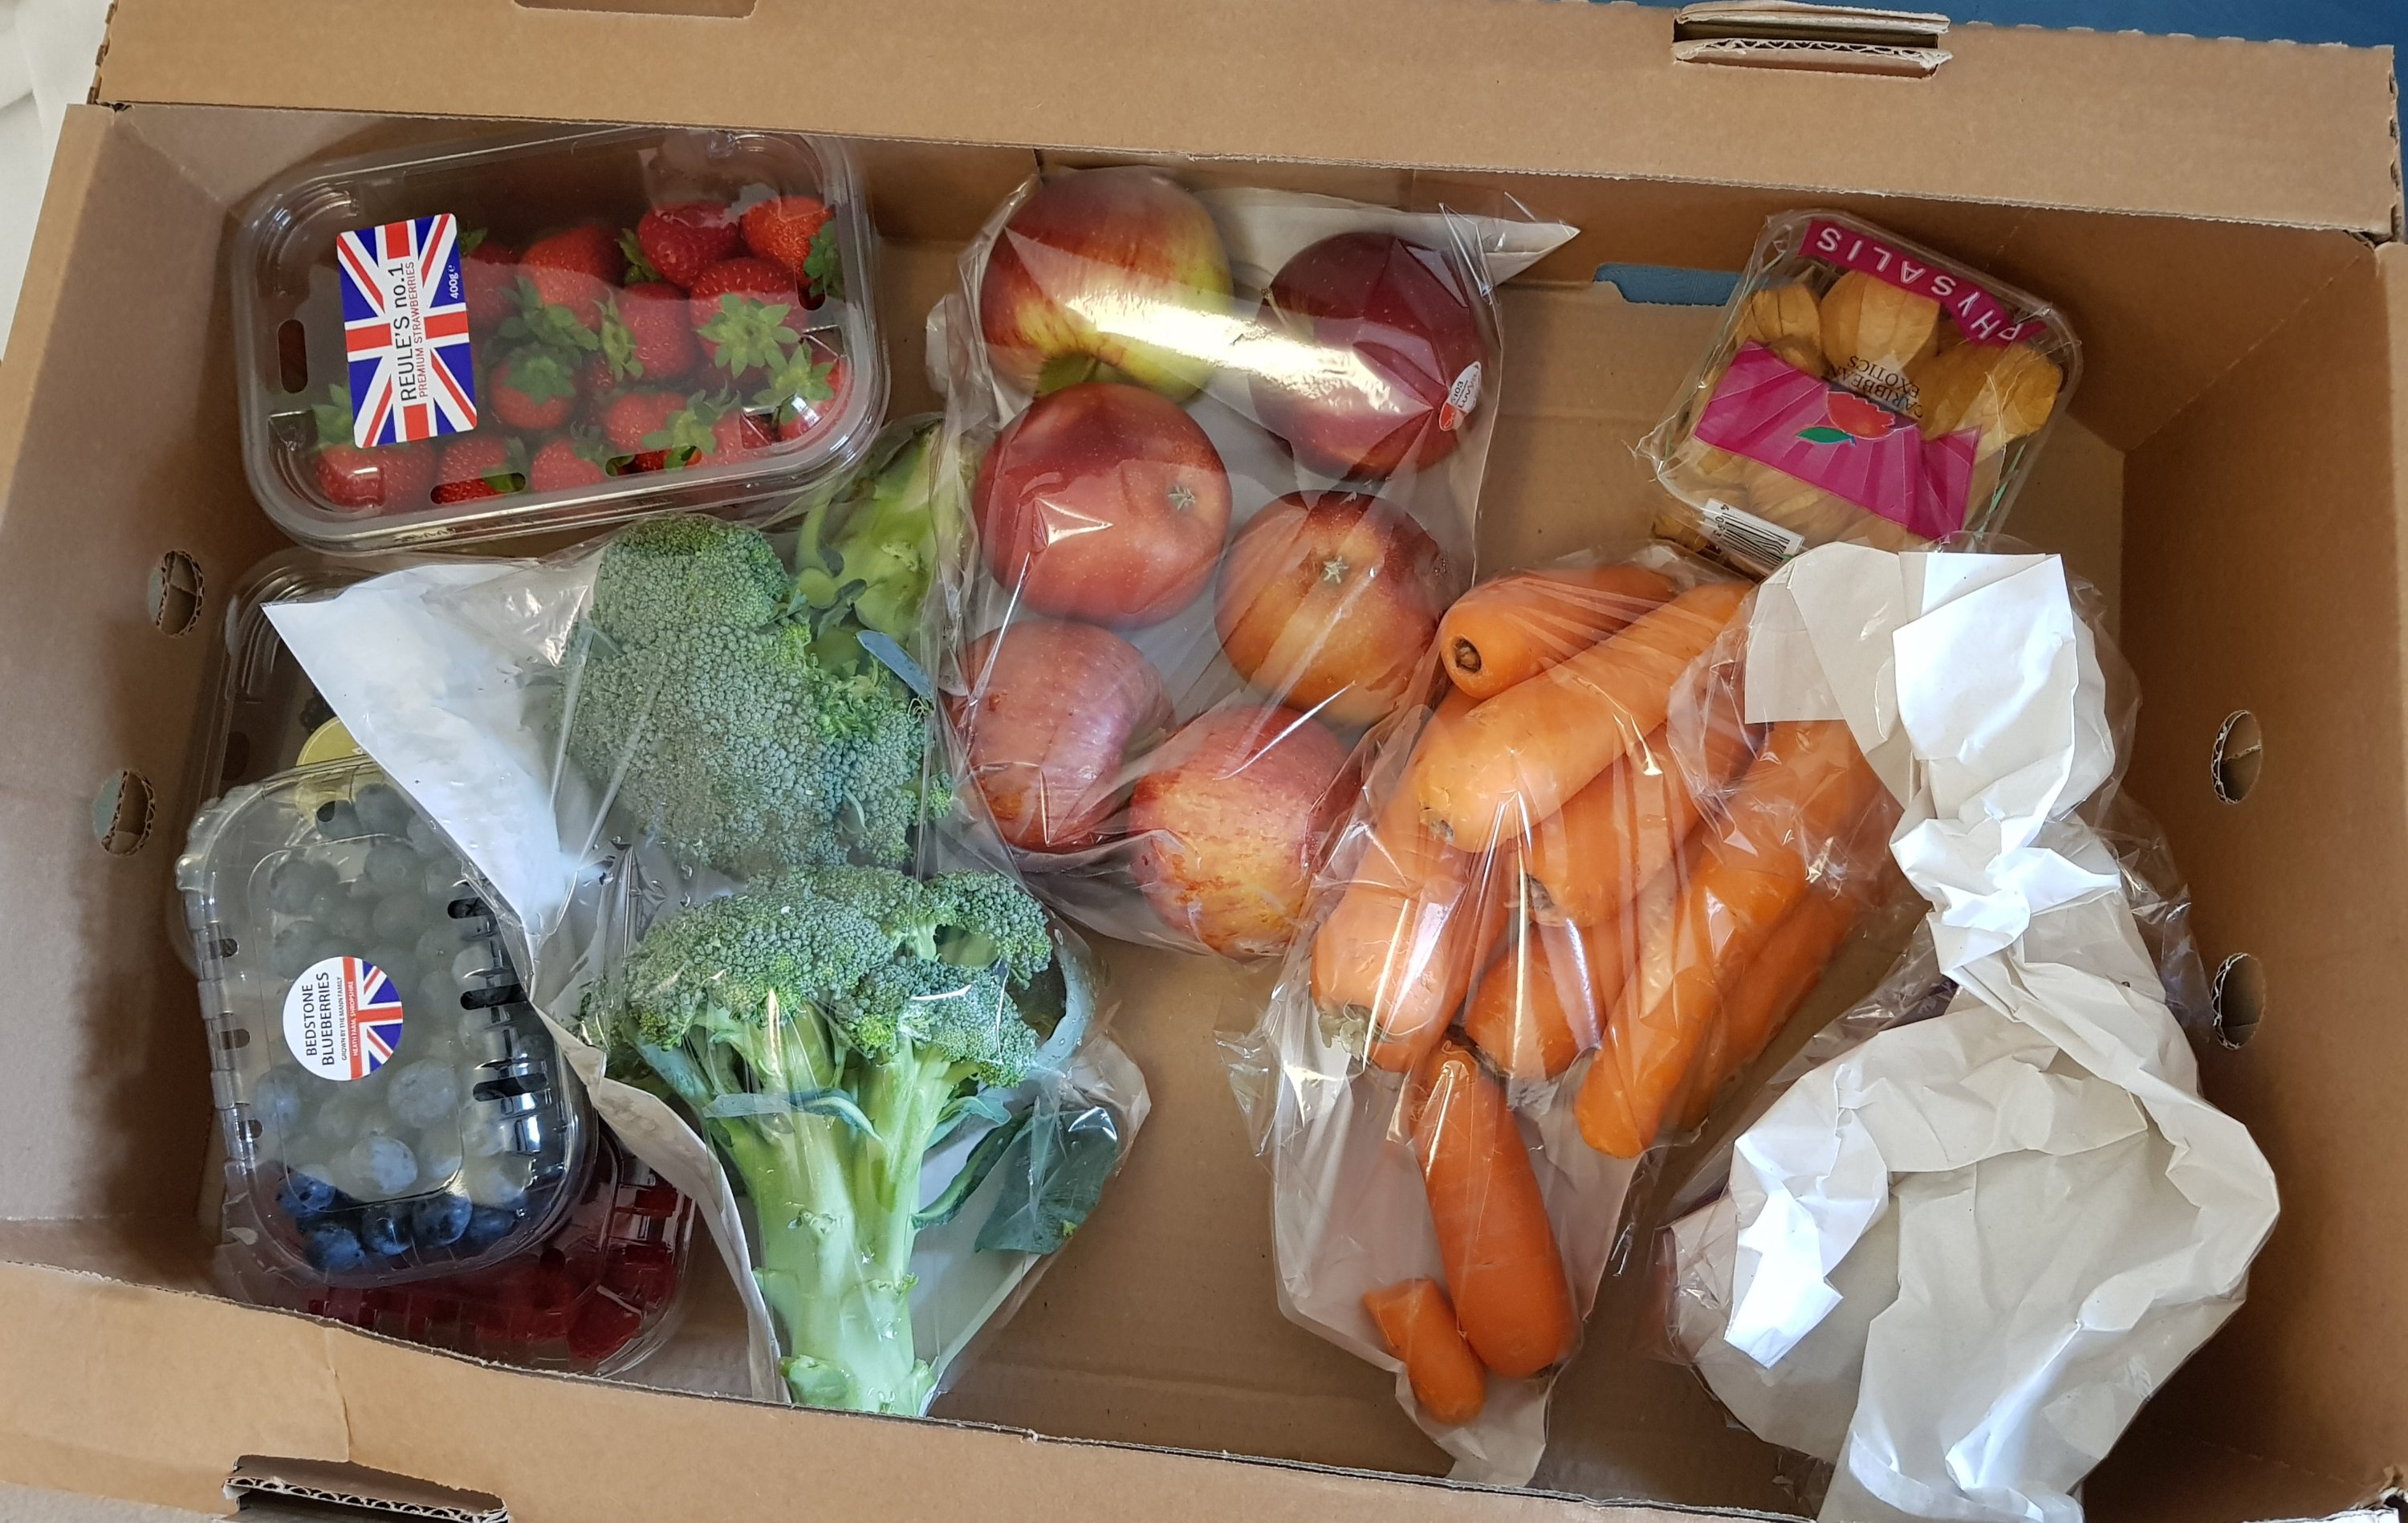 Fruit and veg box full of plastic packaging